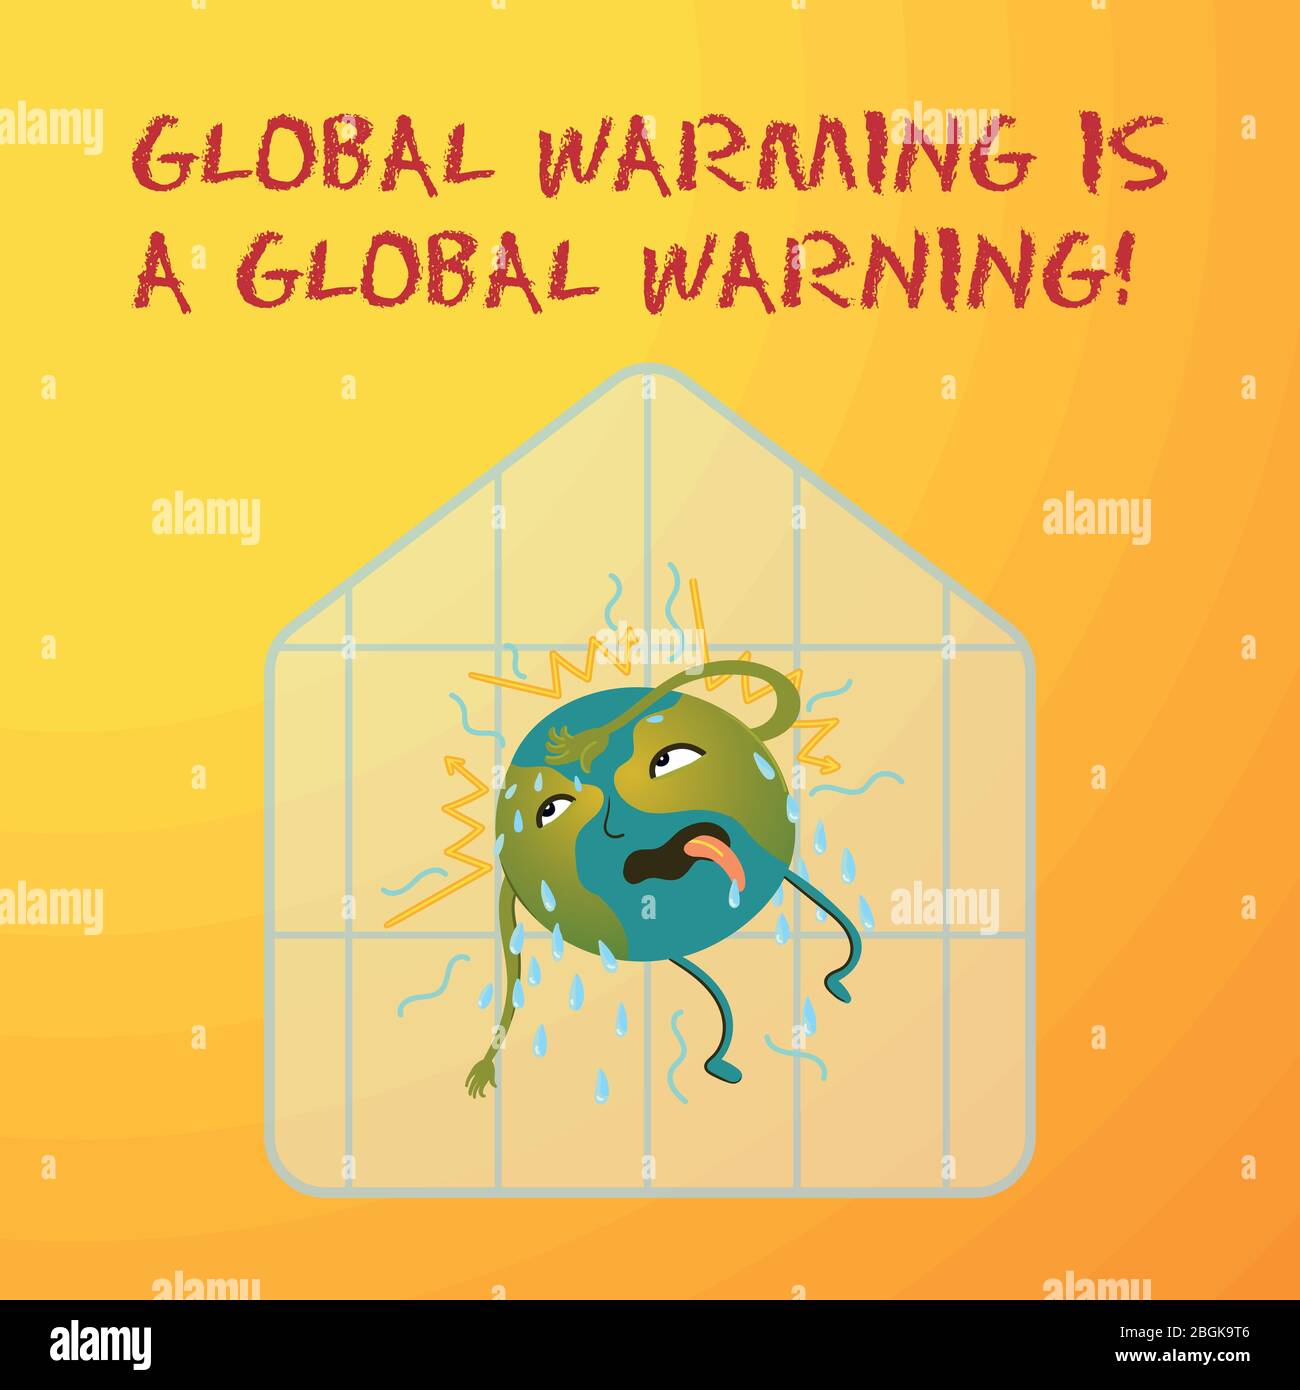 Illustrazione concettuale ecologica del pianeta Terra, che è calda e sta sudando, un effetto serra. Il riscaldamento globale è un avvertimento globale. Illustrazione Vettoriale